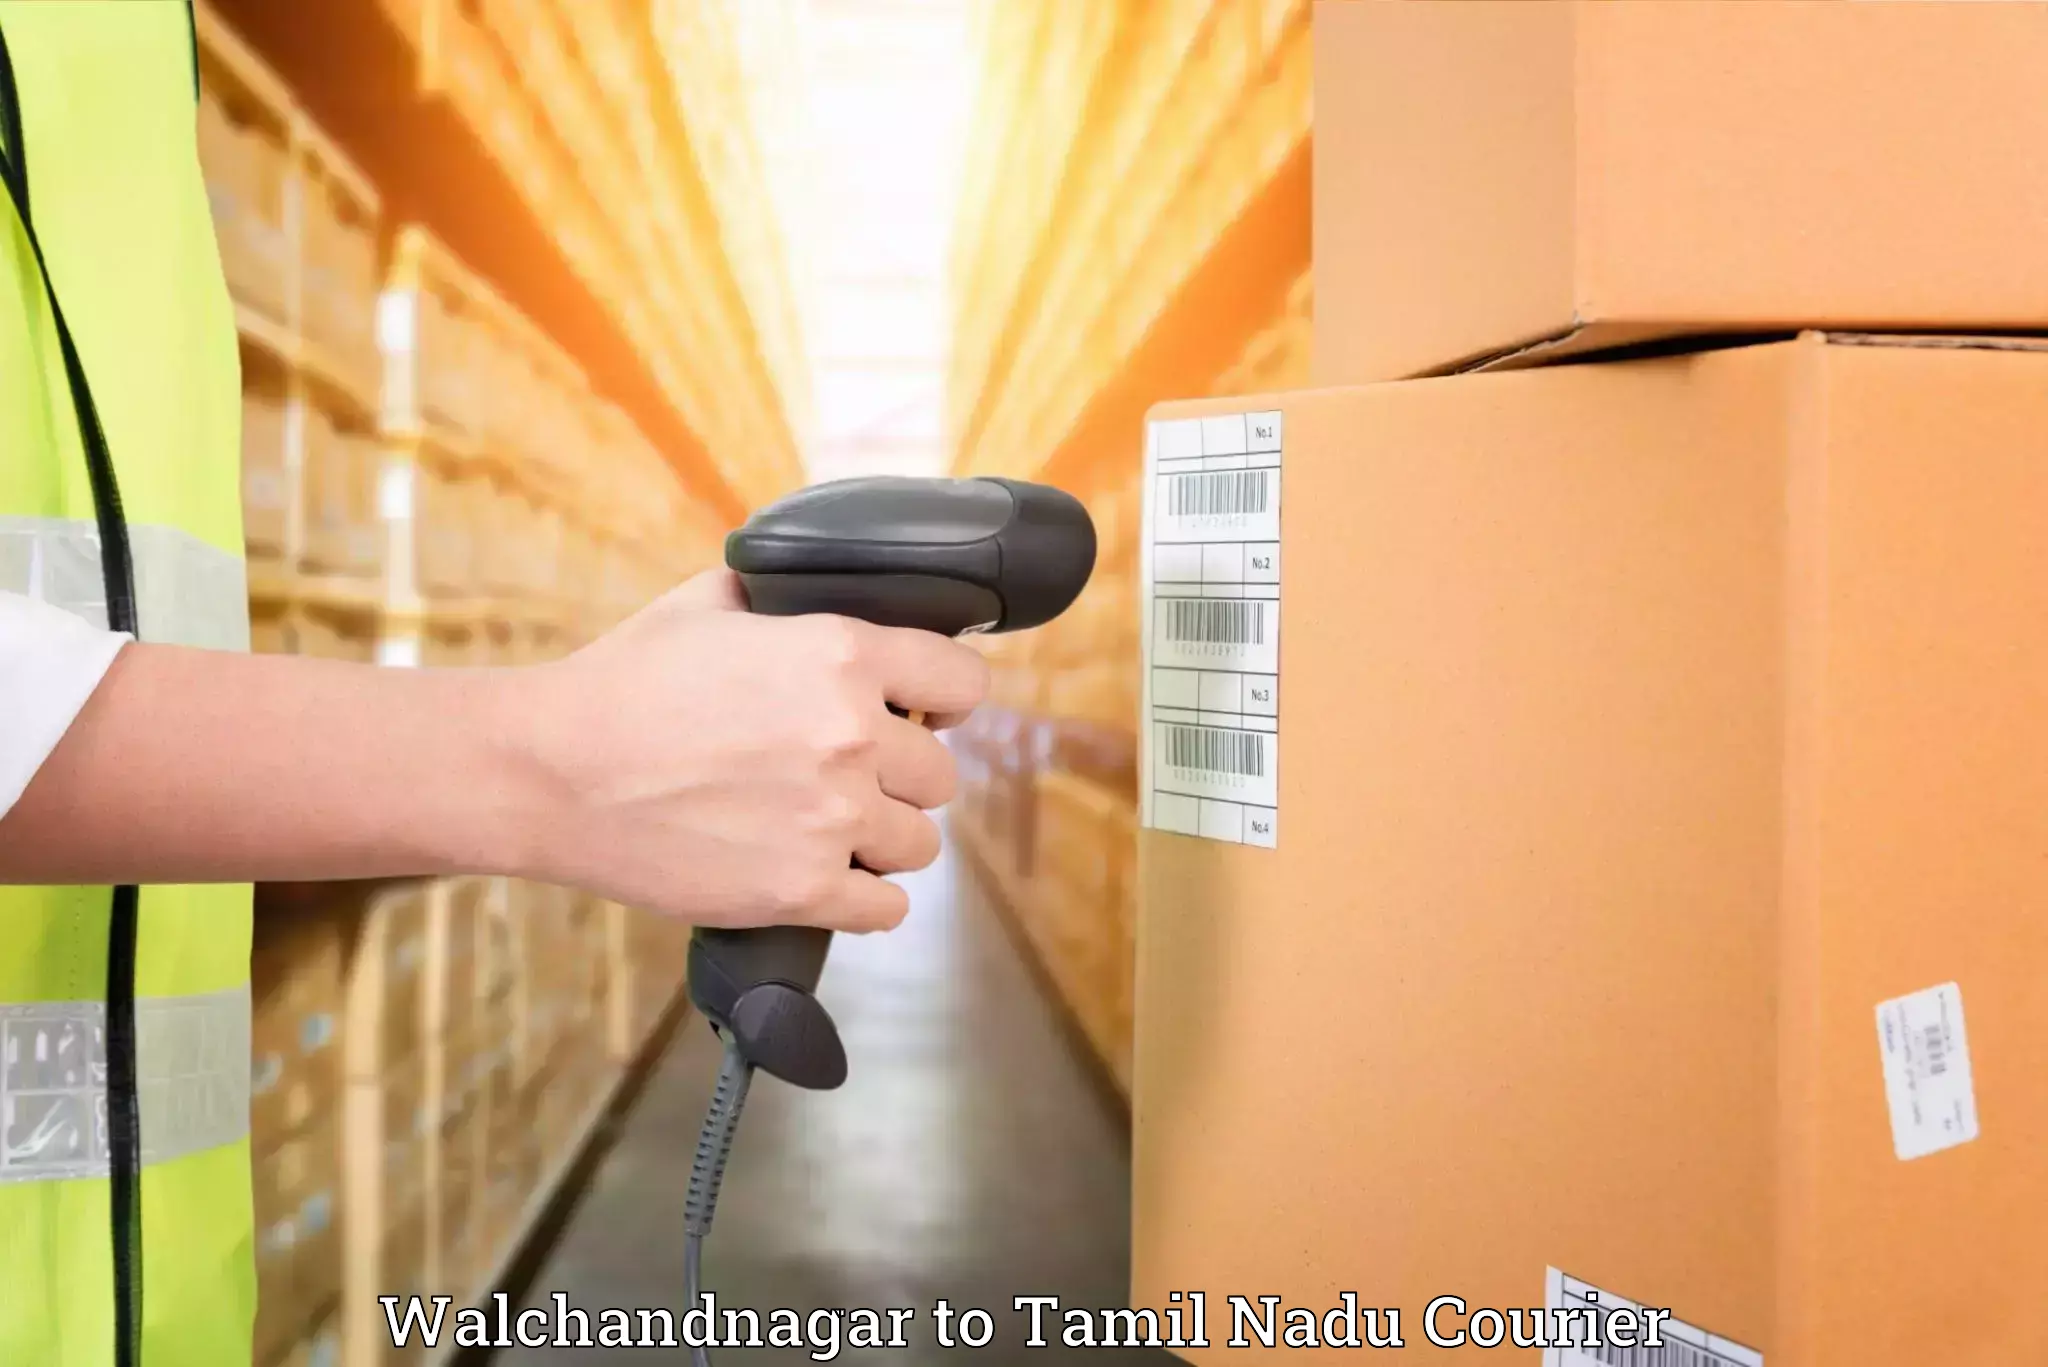 Professional moving company Walchandnagar to Virudhunagar